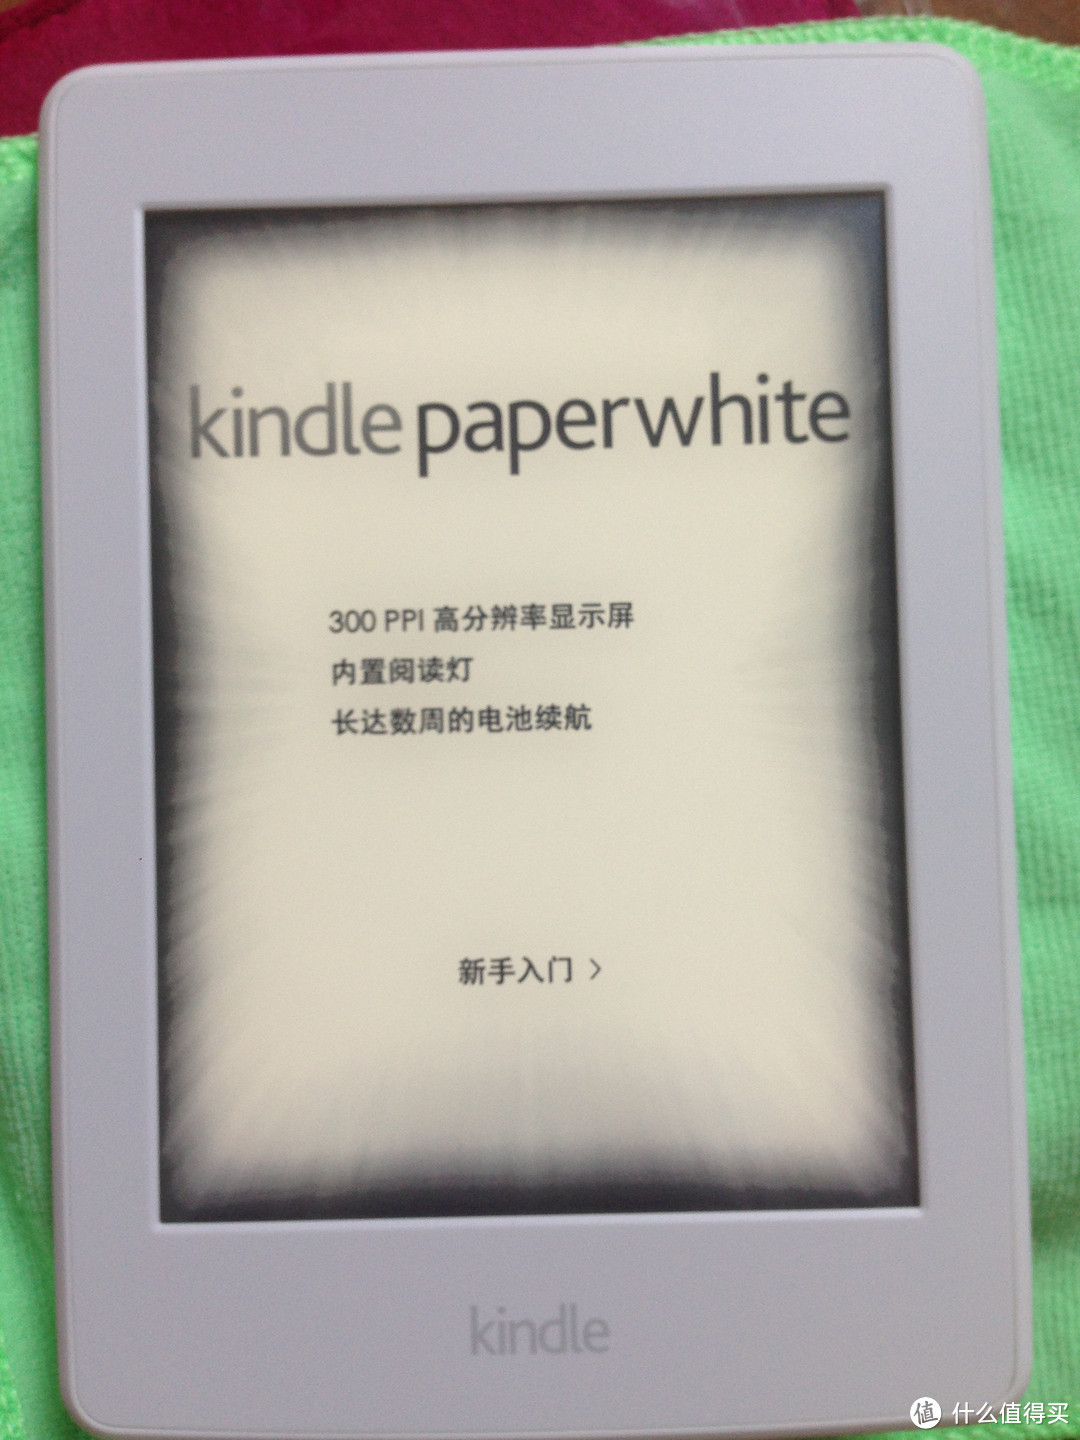 入手！Amazon亚马逊国行Kindle Paperwhite 3 阅读器（白色）